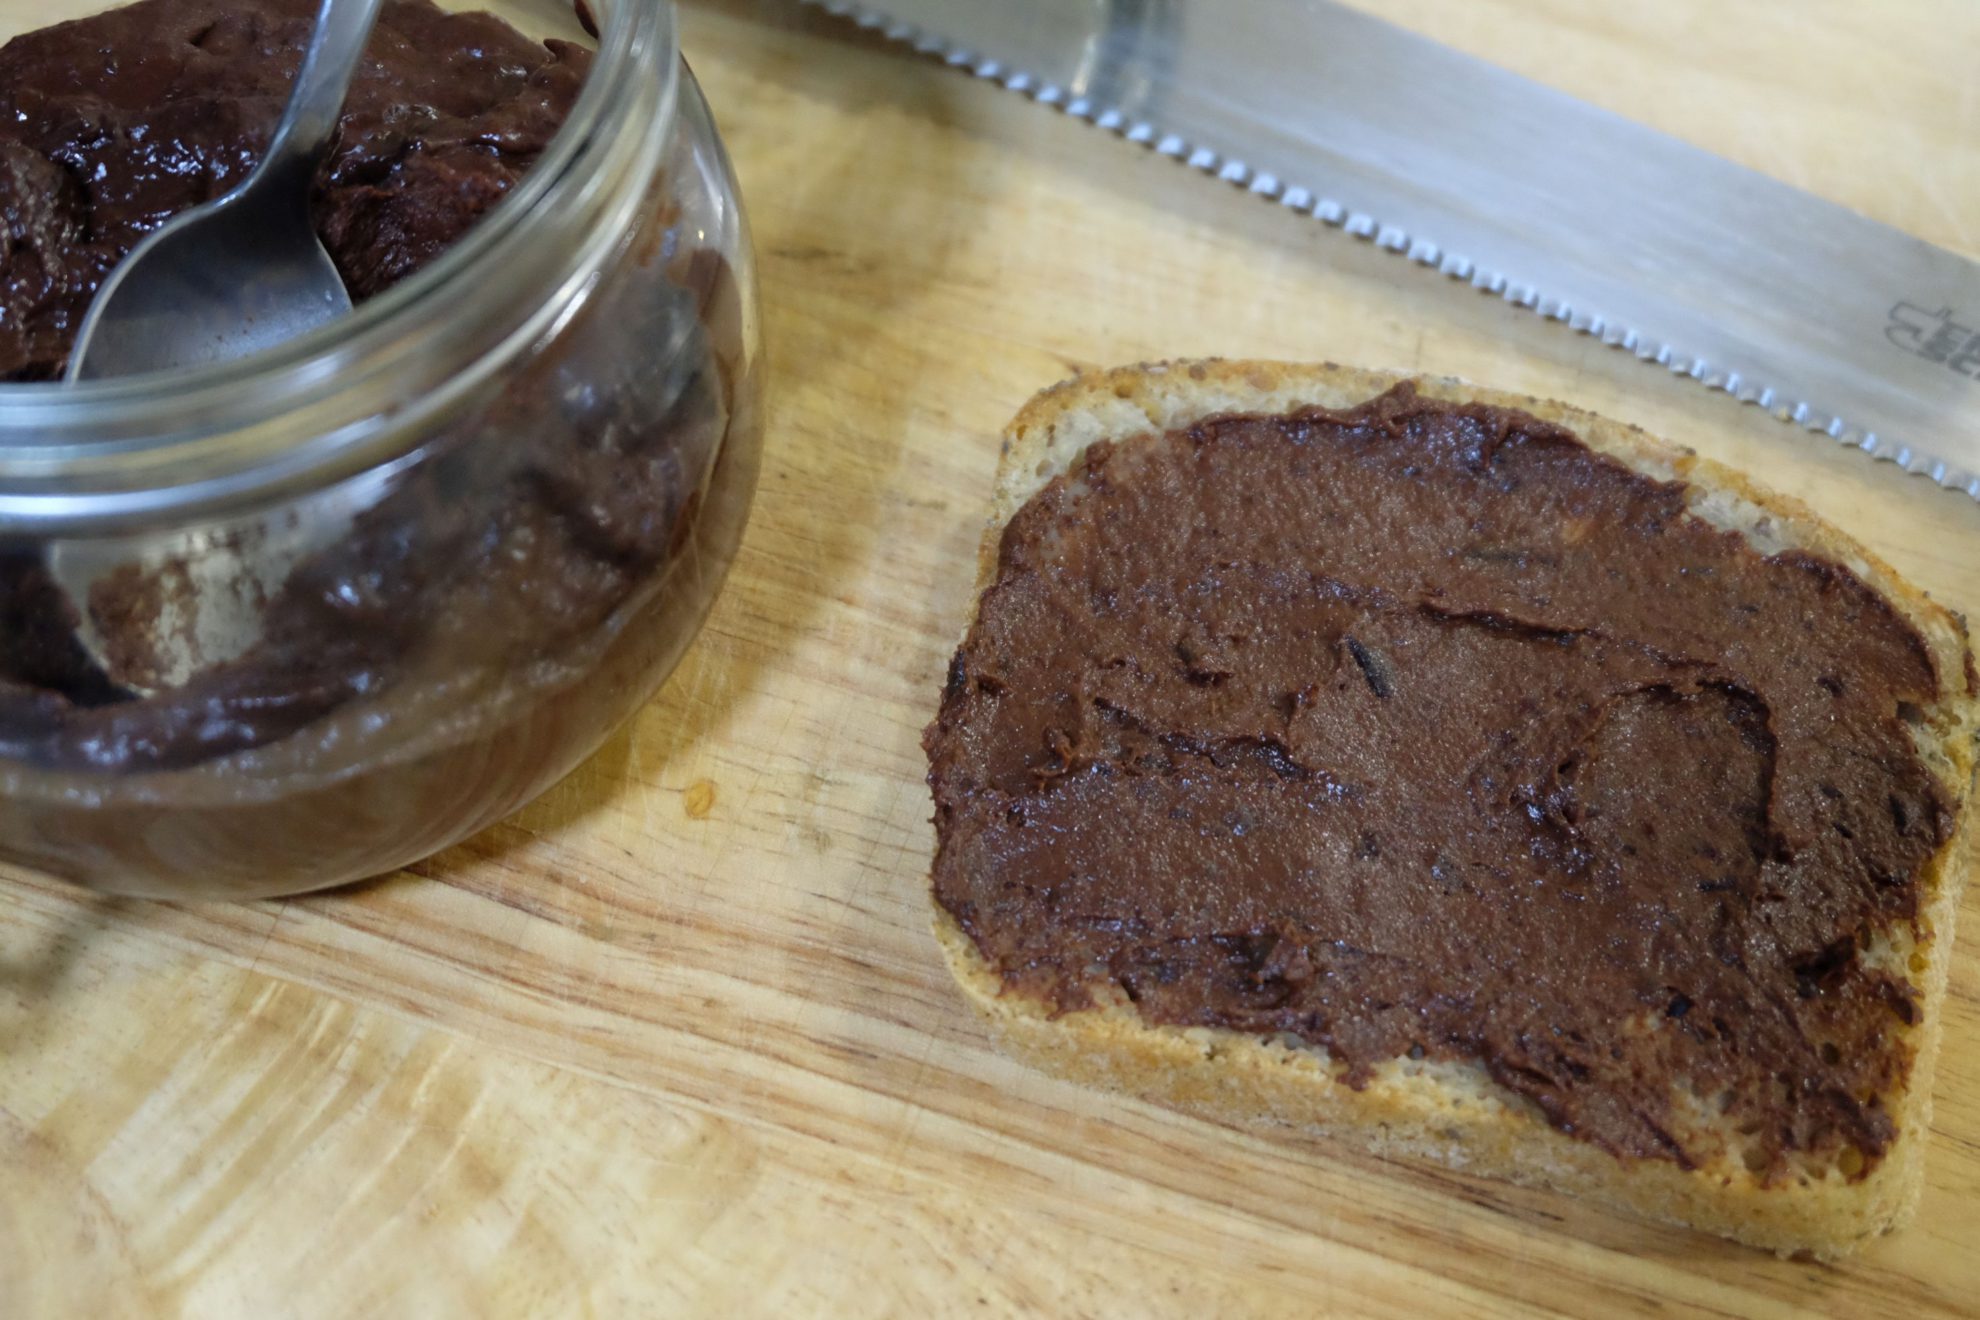 Plum & chocolate preserve. Marmolada śliwkowo-czekoladowa – Breadcentric